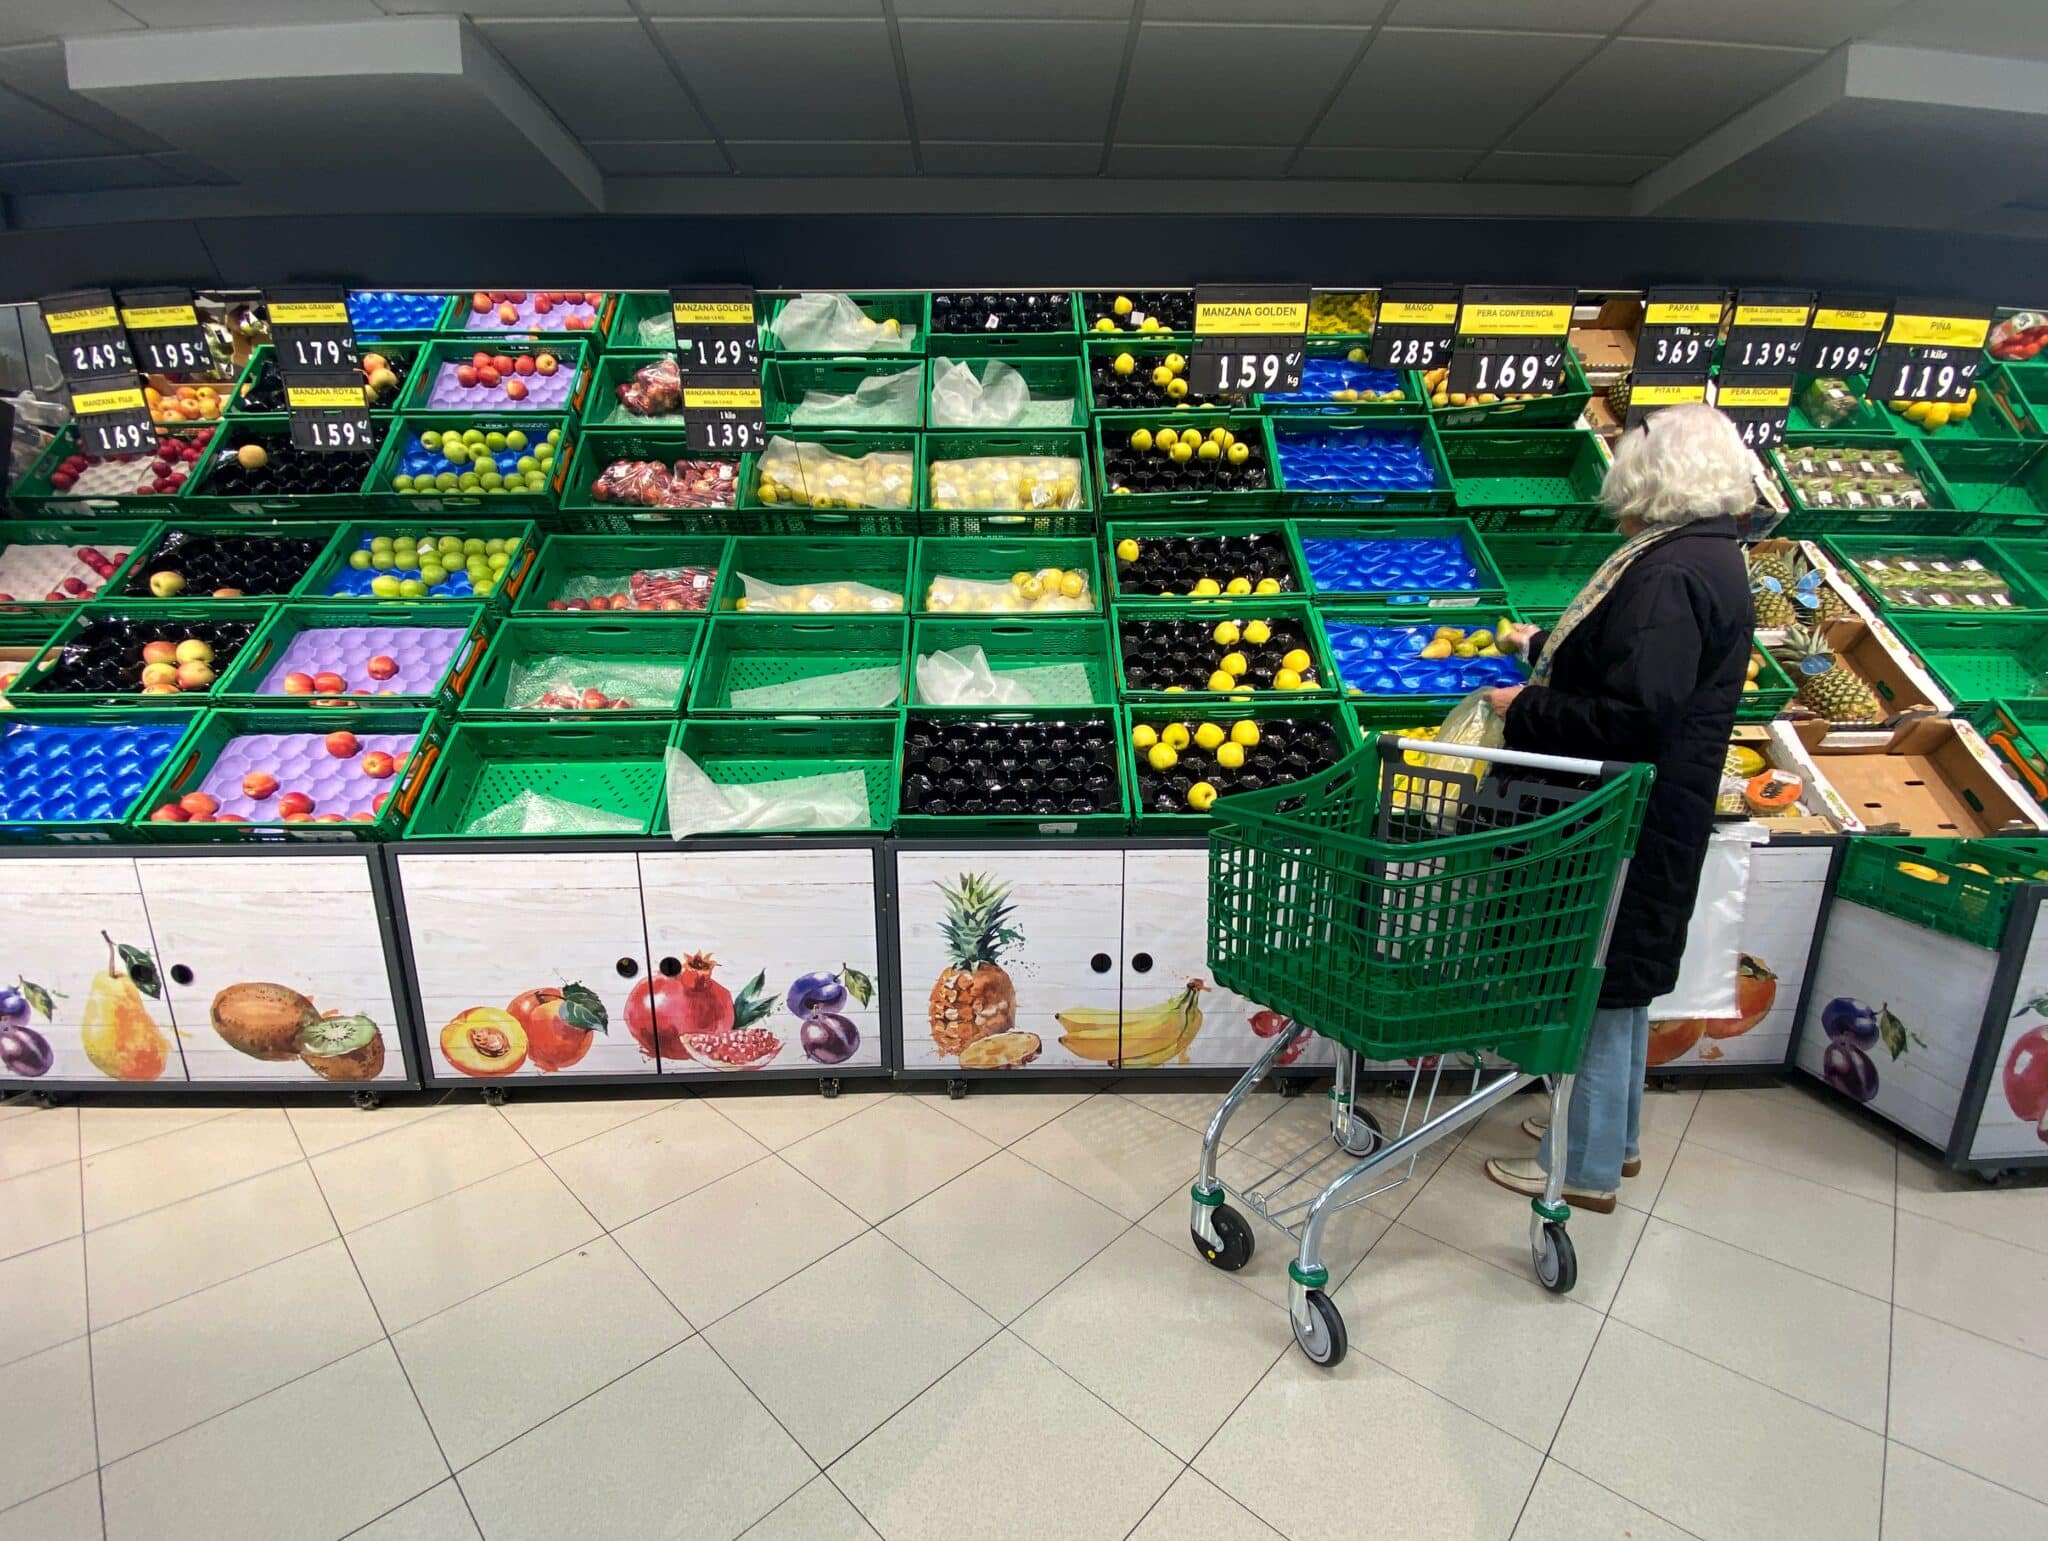 Un mujer coloca fruta en una bolsa mientras observar los productos que quedan en las cajas de un supermercado.